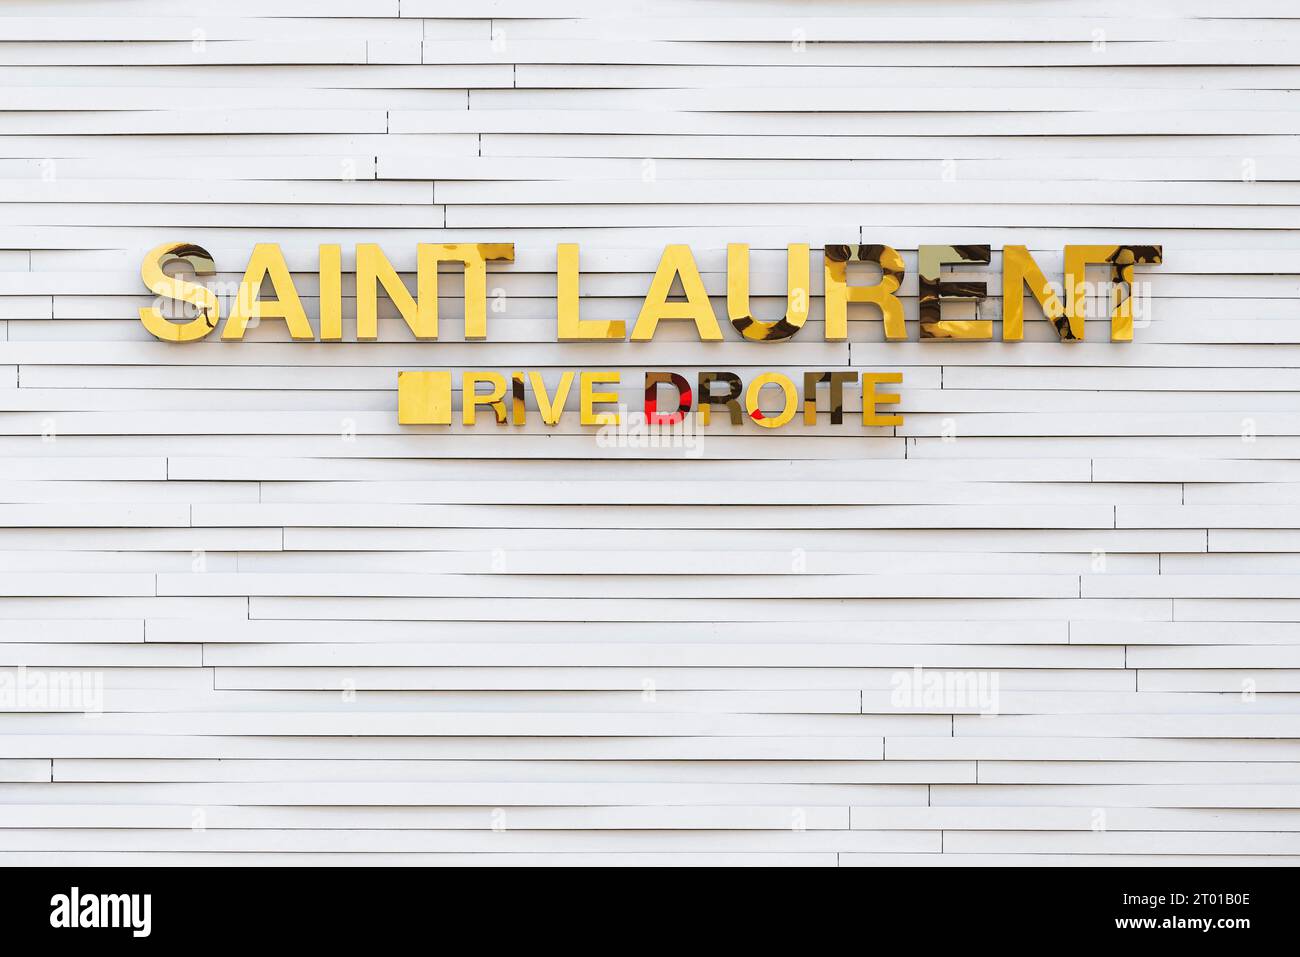 Boutique Saint Laurent Rive droite à Beverly Hills, Los Angeles, Californie, États-Unis. Boutique de mode de luxe française sur Rodeo Drive. Banque D'Images